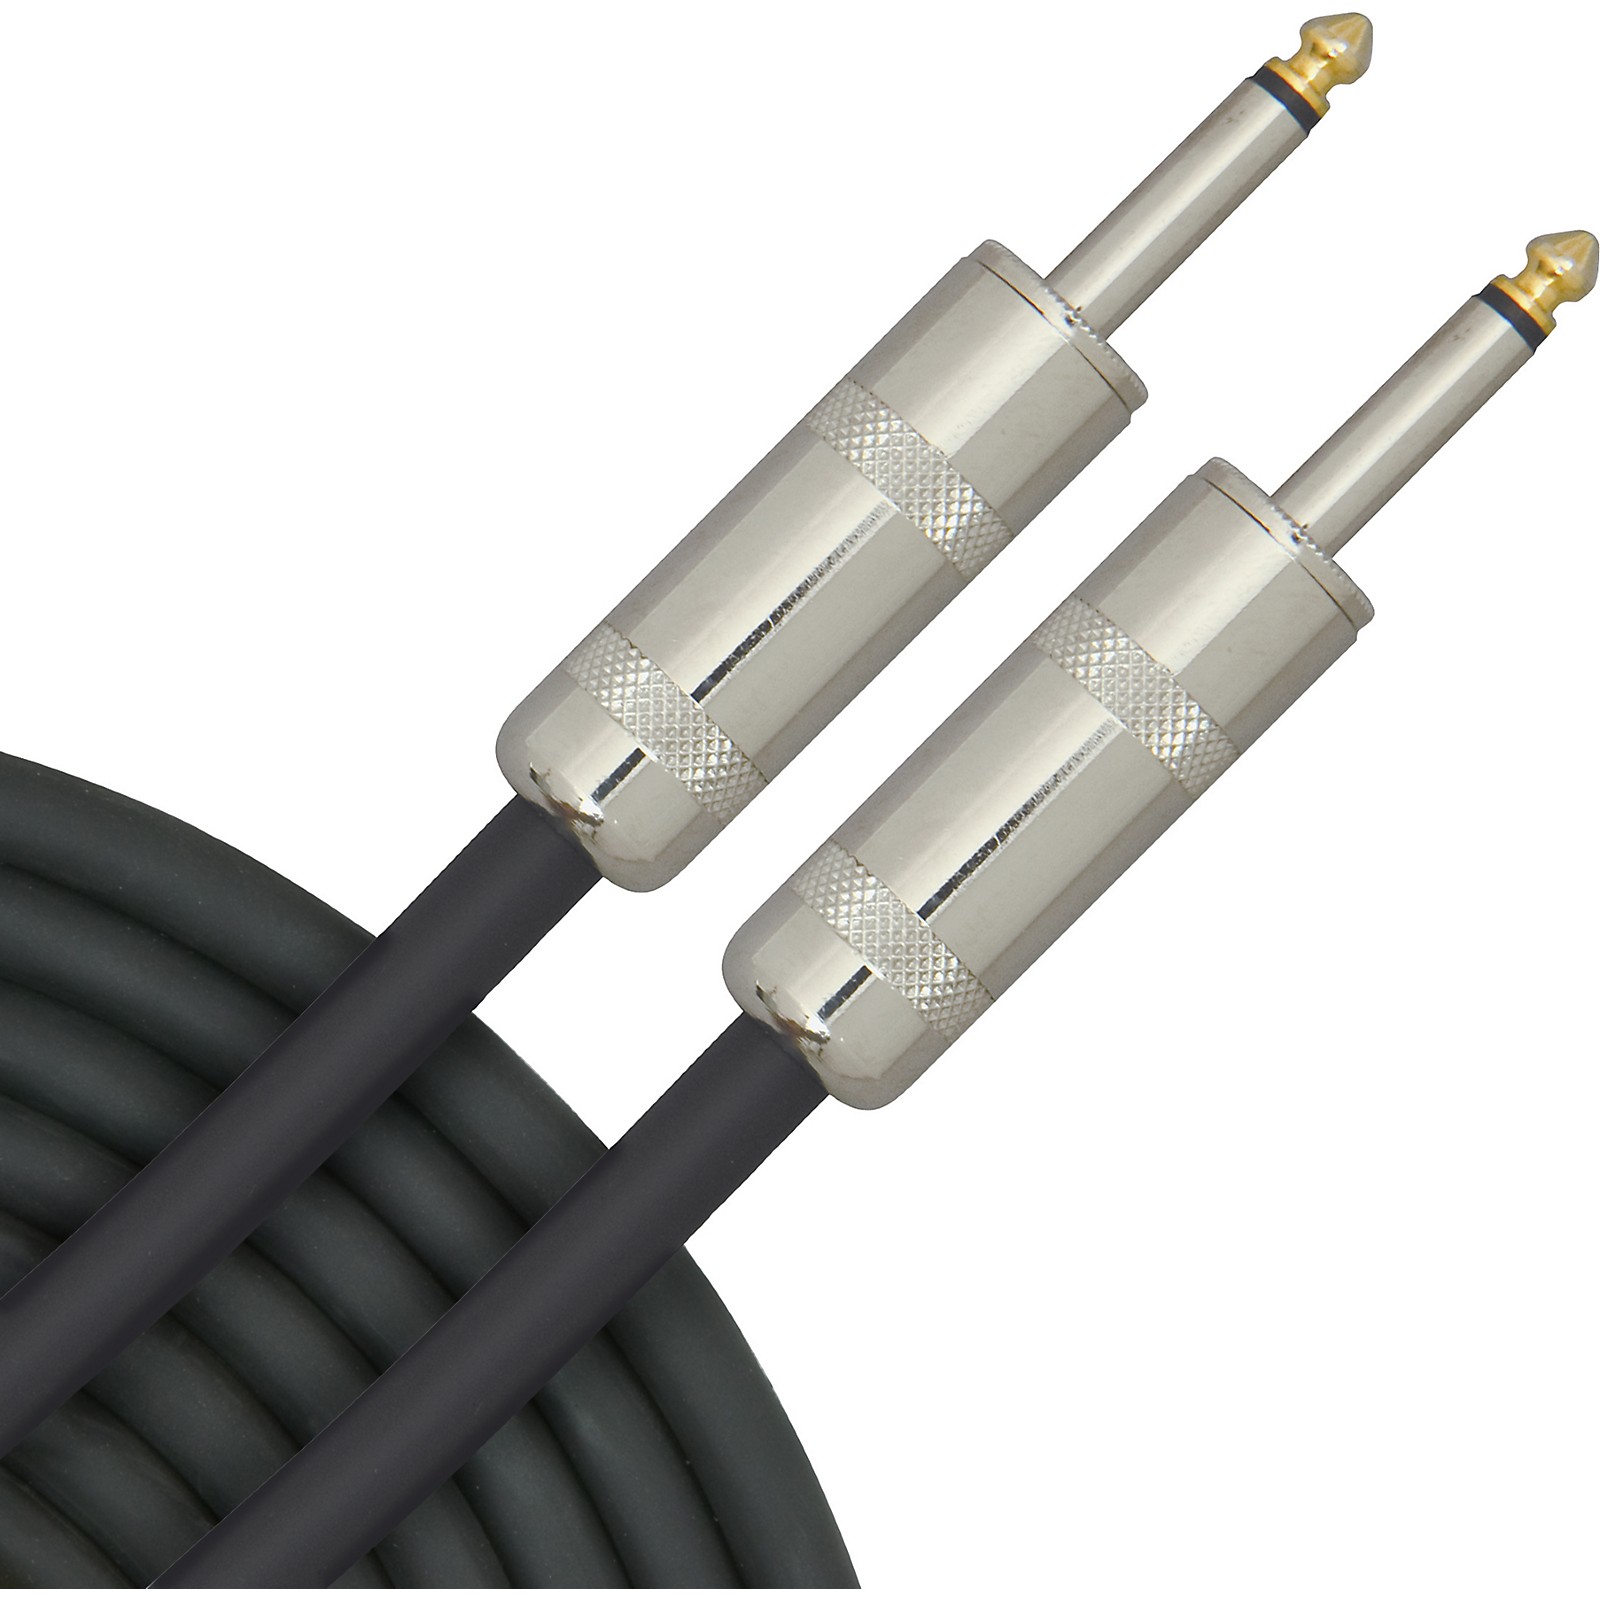 Eurotubes 10 Gauge 6 Foot Speaker Cable 